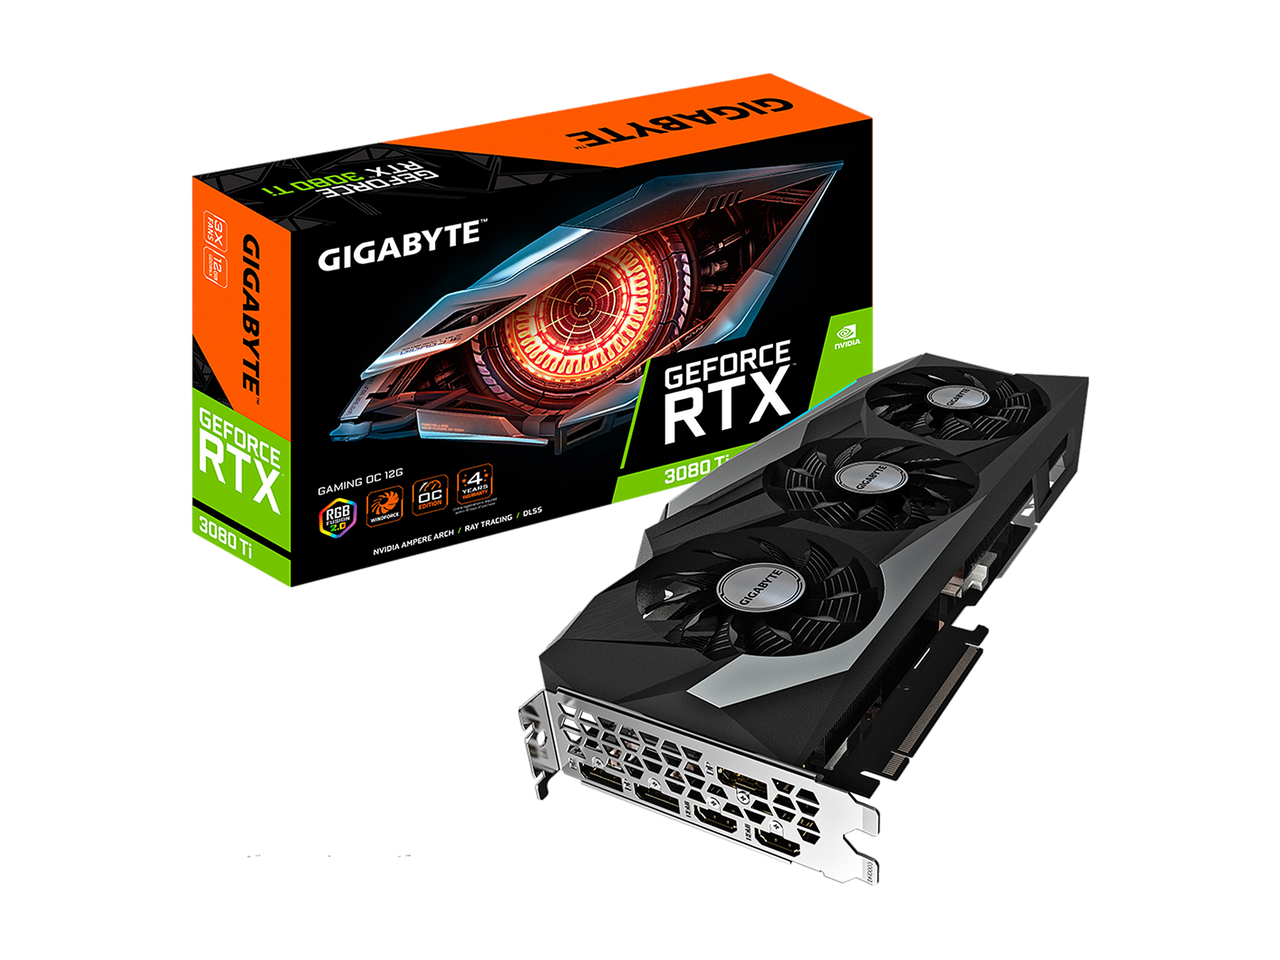 GIGABYTE Gaming GeForce RTX 3080 Ti 12GB GDDR6X PCI Express 4.0 ATX Video Card GV-N308TGAMING OC-12GD